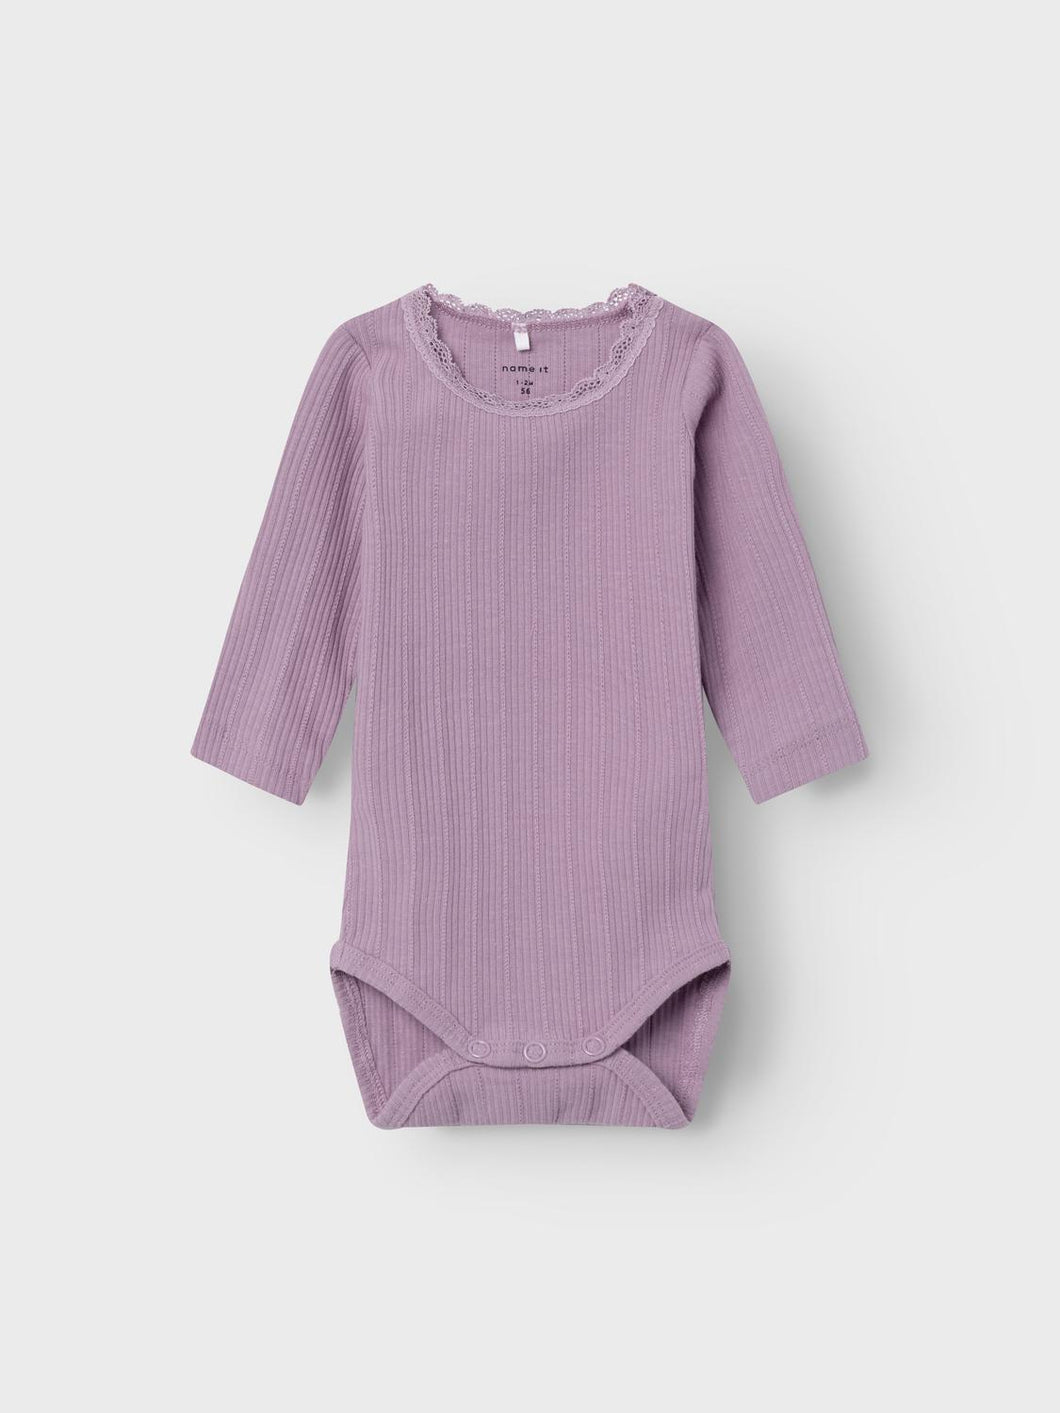 NBFRANIE T-Shirts & Tops - Lavender Mist